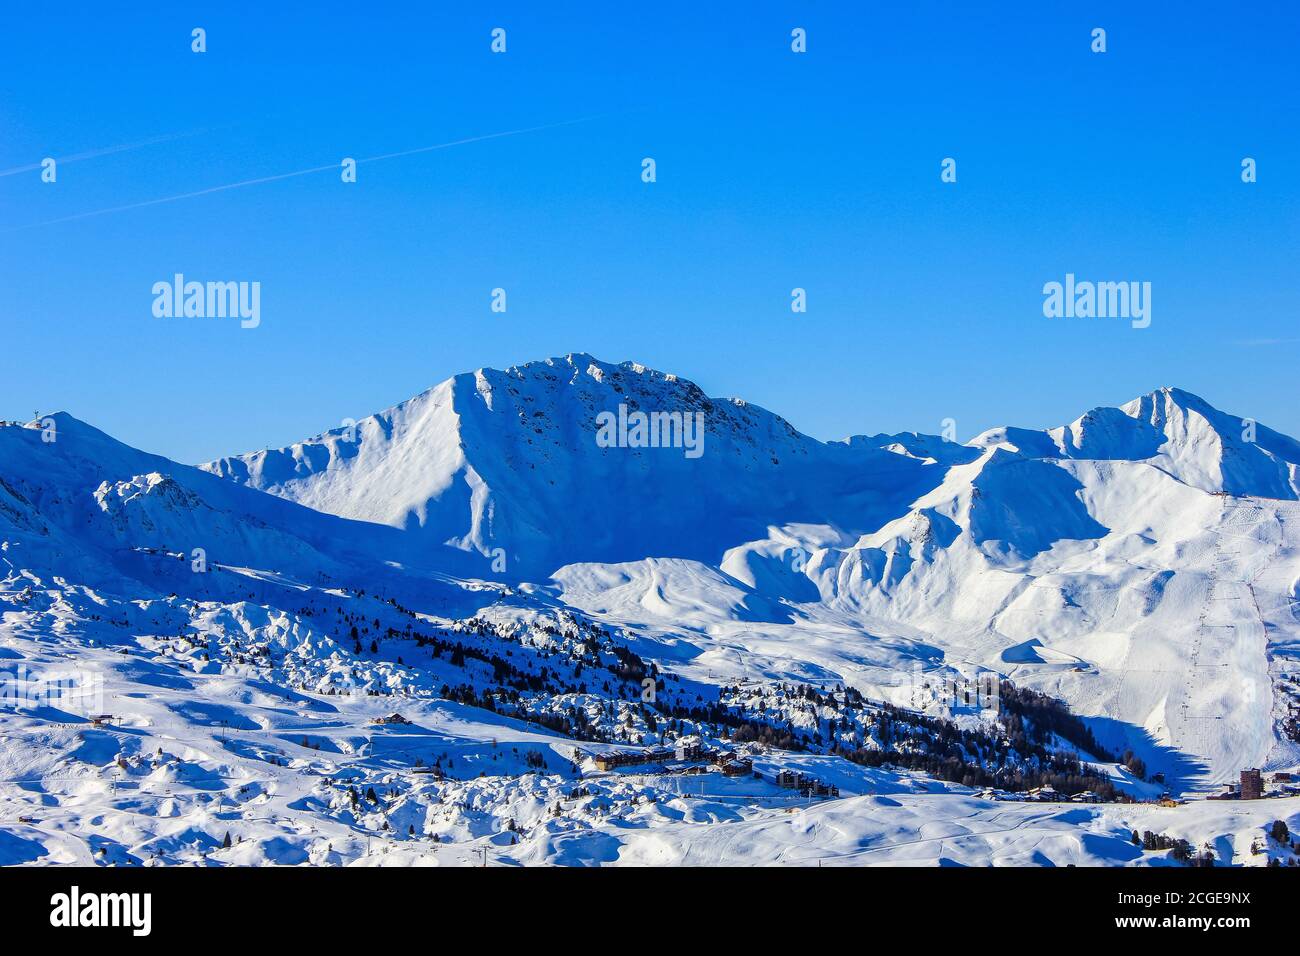 Vue sur le domaine skiable de Paradiski la Plagne, Alpes françaises Banque D'Images